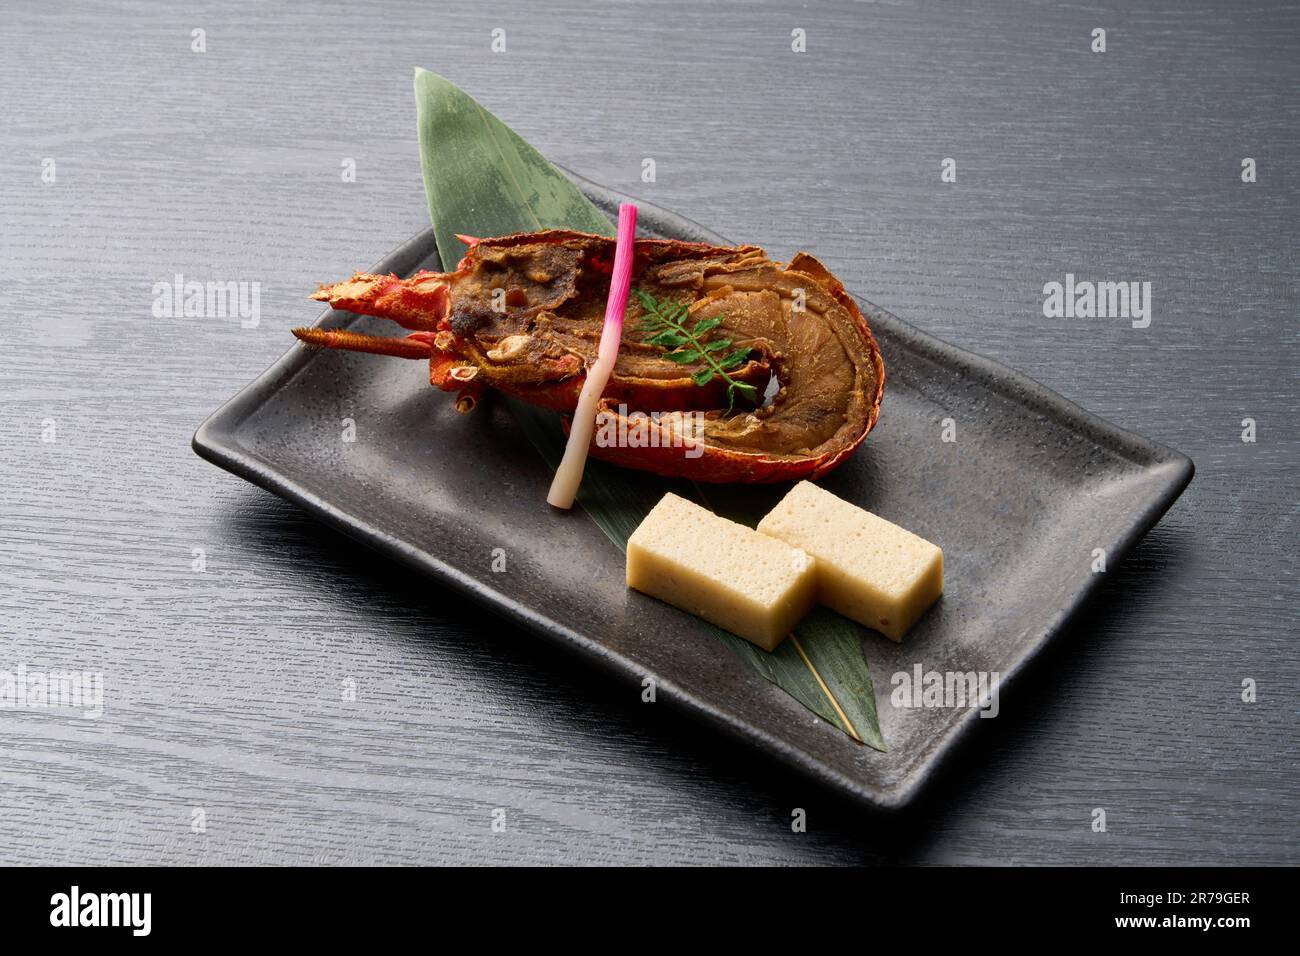 Cuisine japonaise, homard ISE grillé sur carrelage Banque D'Images